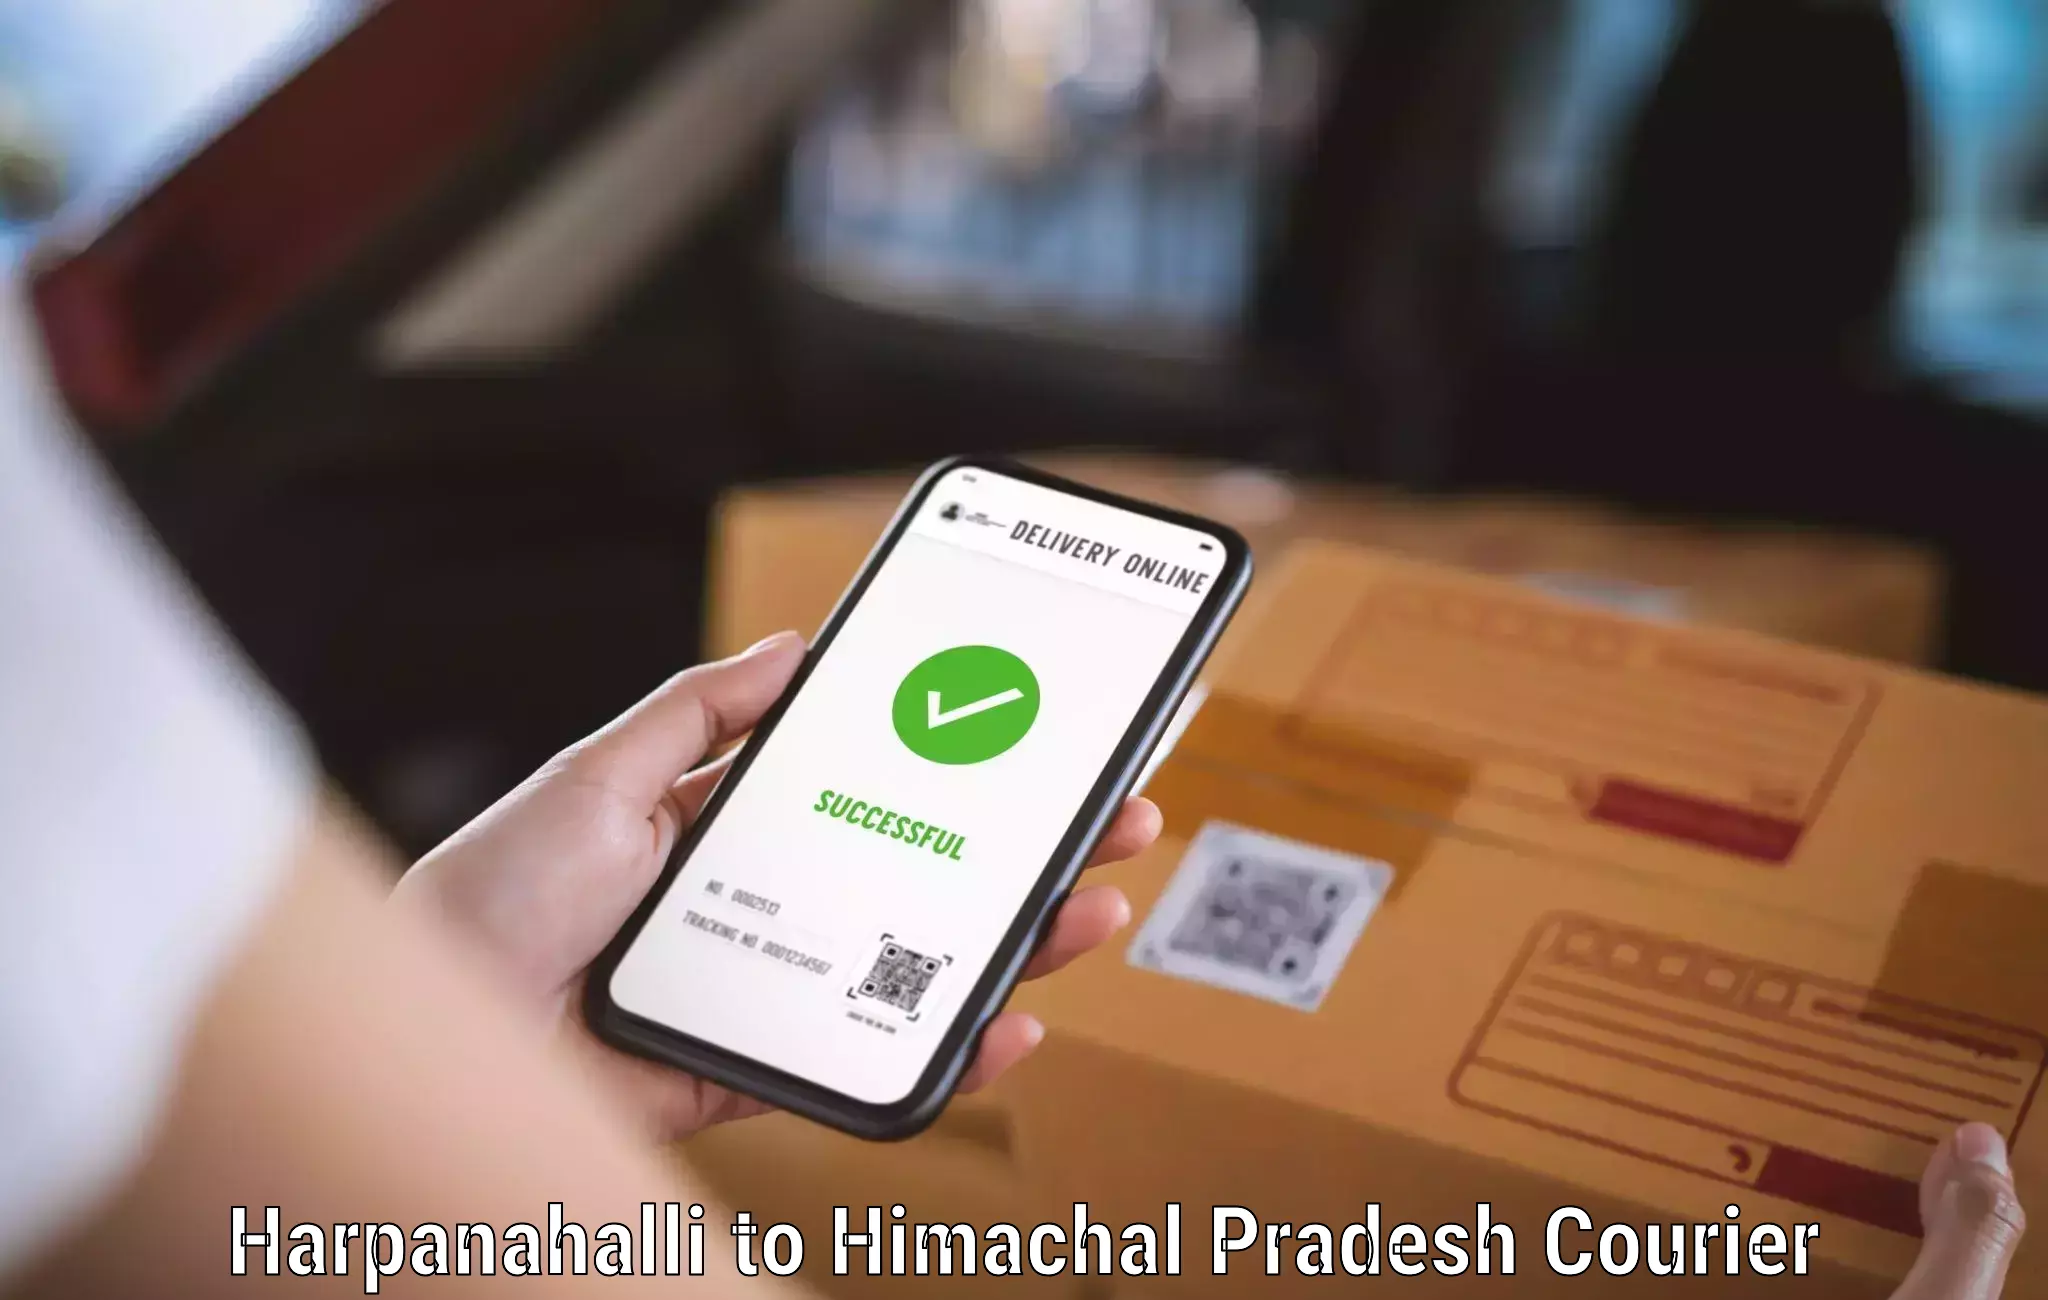 Retail shipping solutions Harpanahalli to Dheera